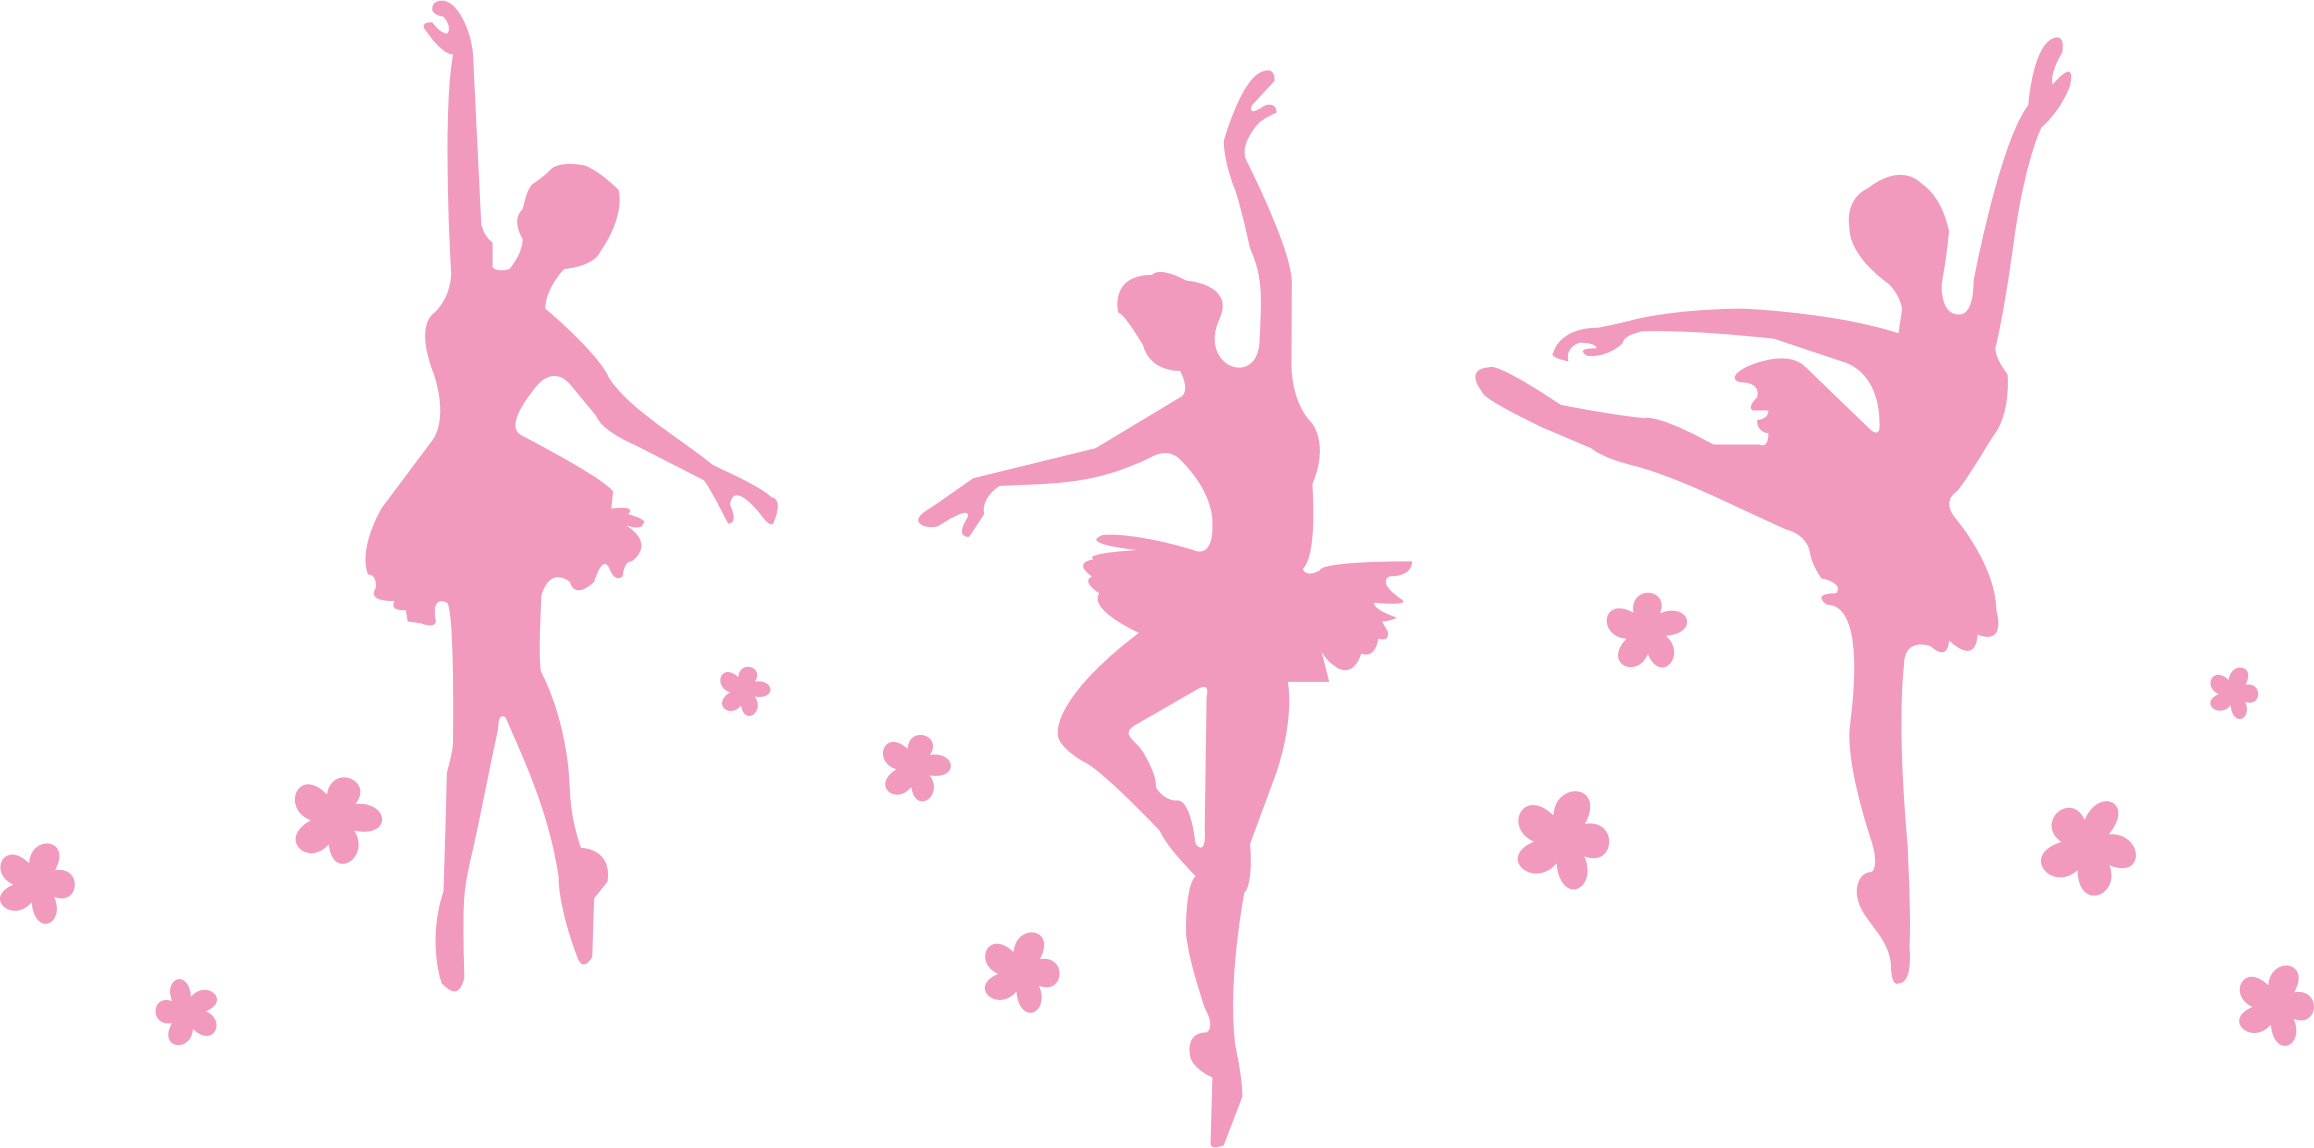 ballerina ballet dancer femal